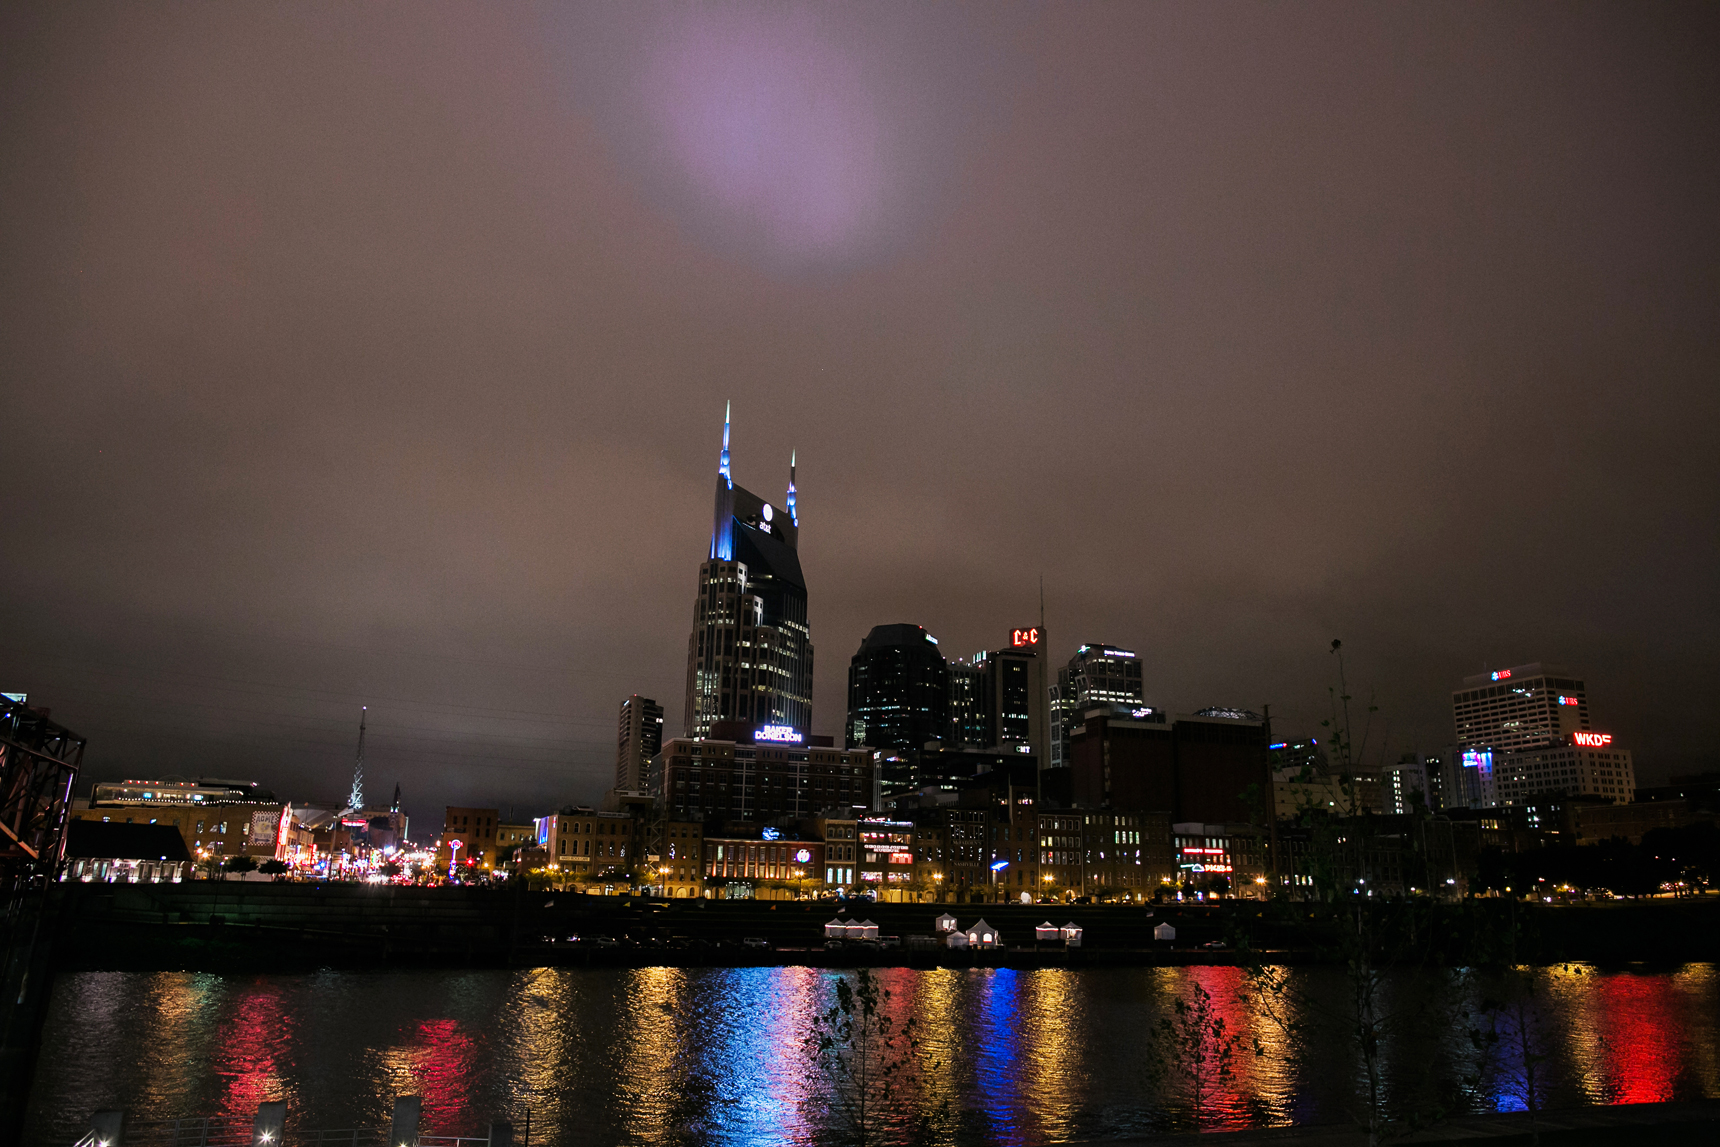 Nashville skyline at night